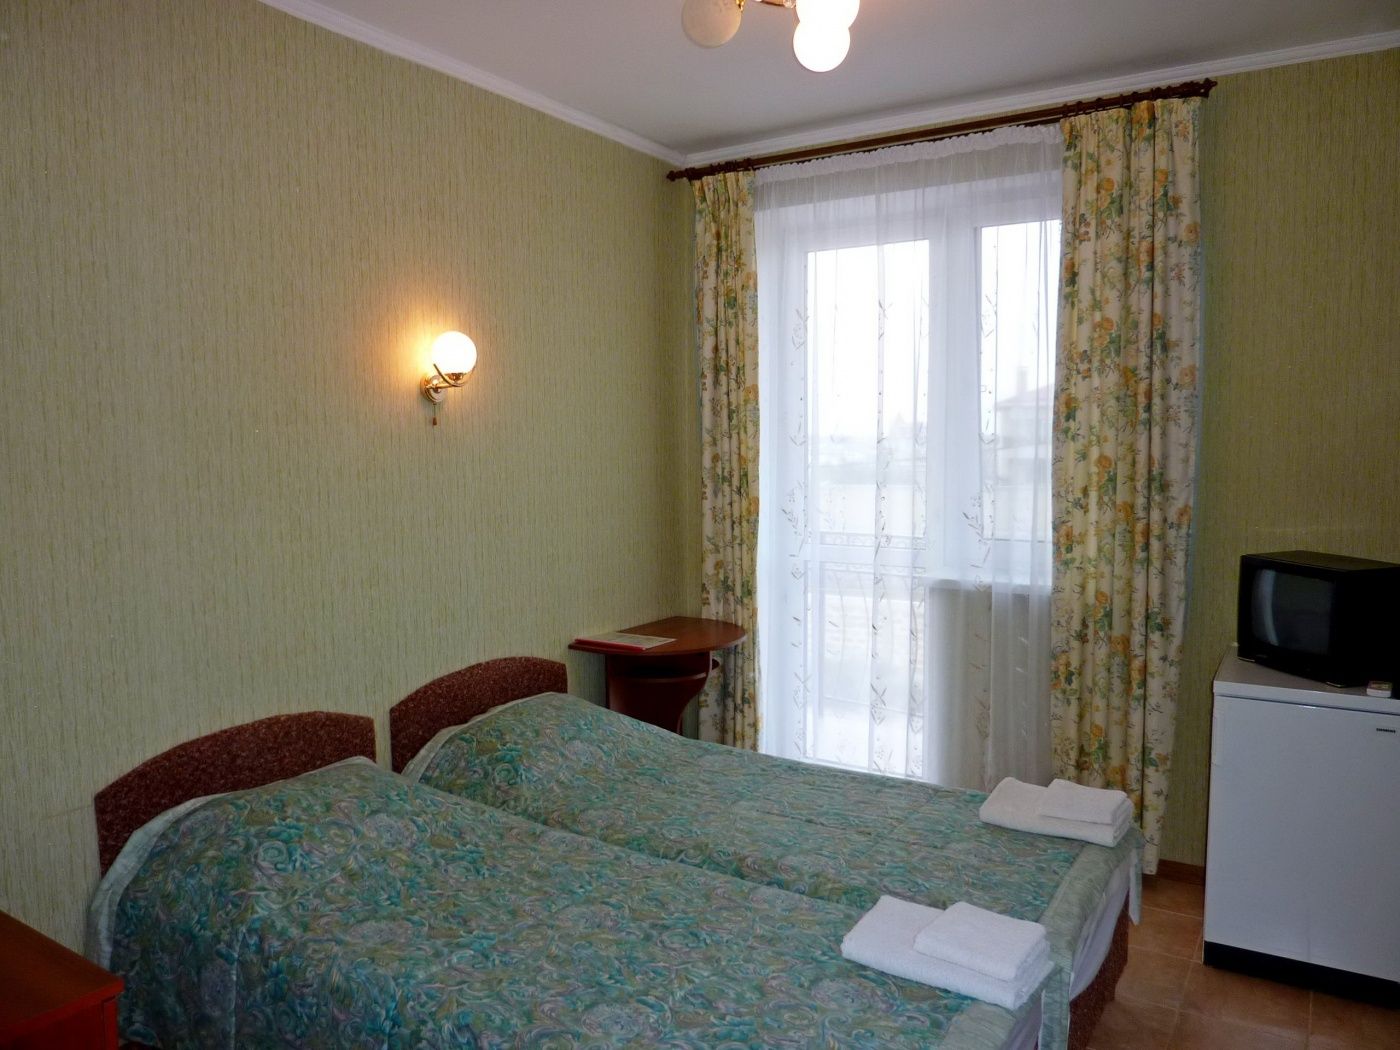 Гостевой дом «Свет маяка» Республика Крым 1-комнатный 2-местный номер, фото 1